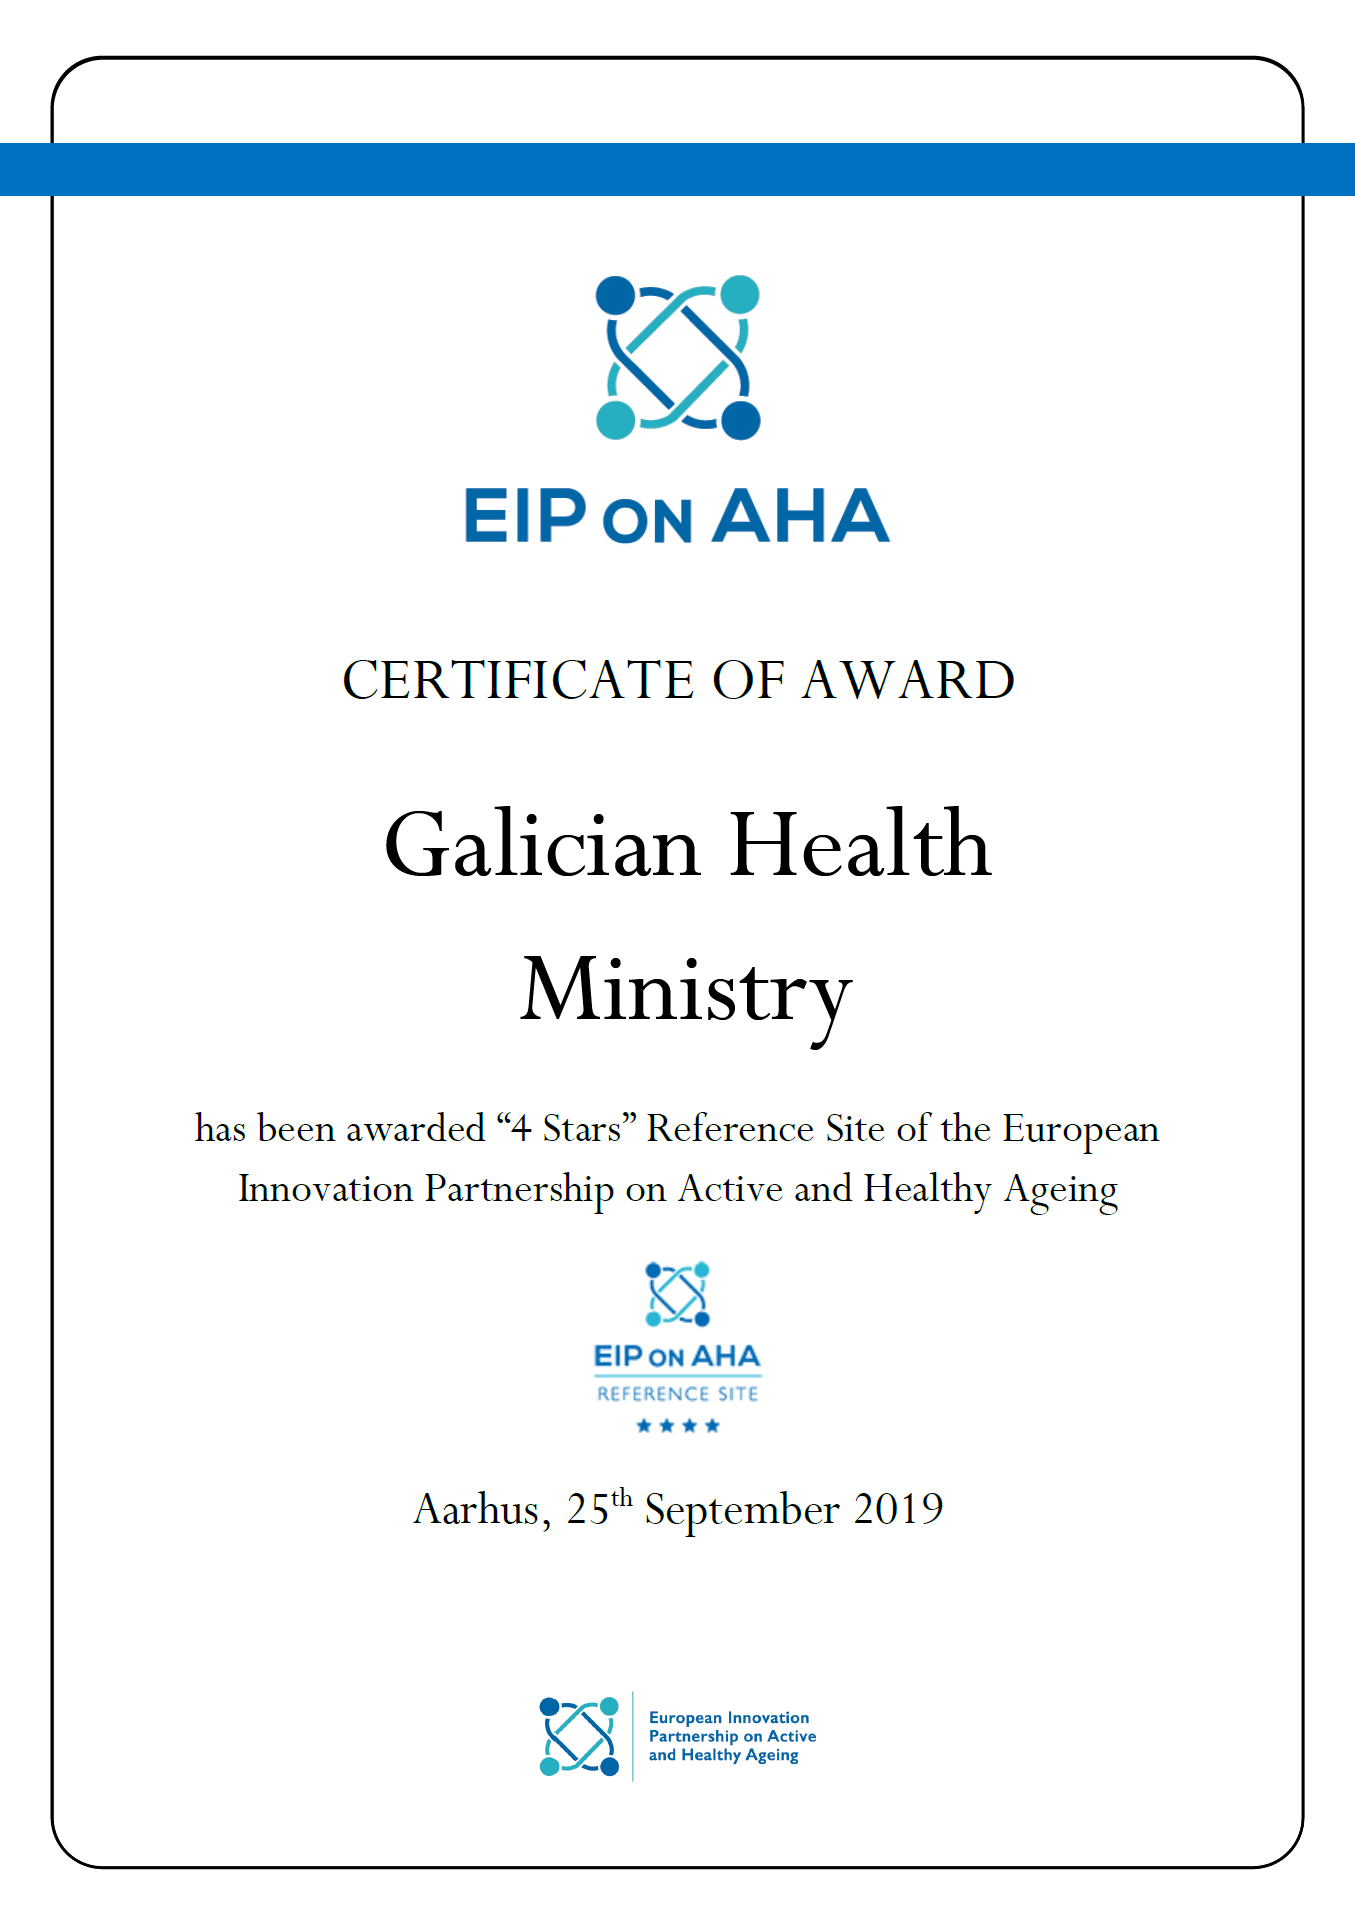 Visor Certificado Galicia Región de Referencia Europea EIP on AHA 2019